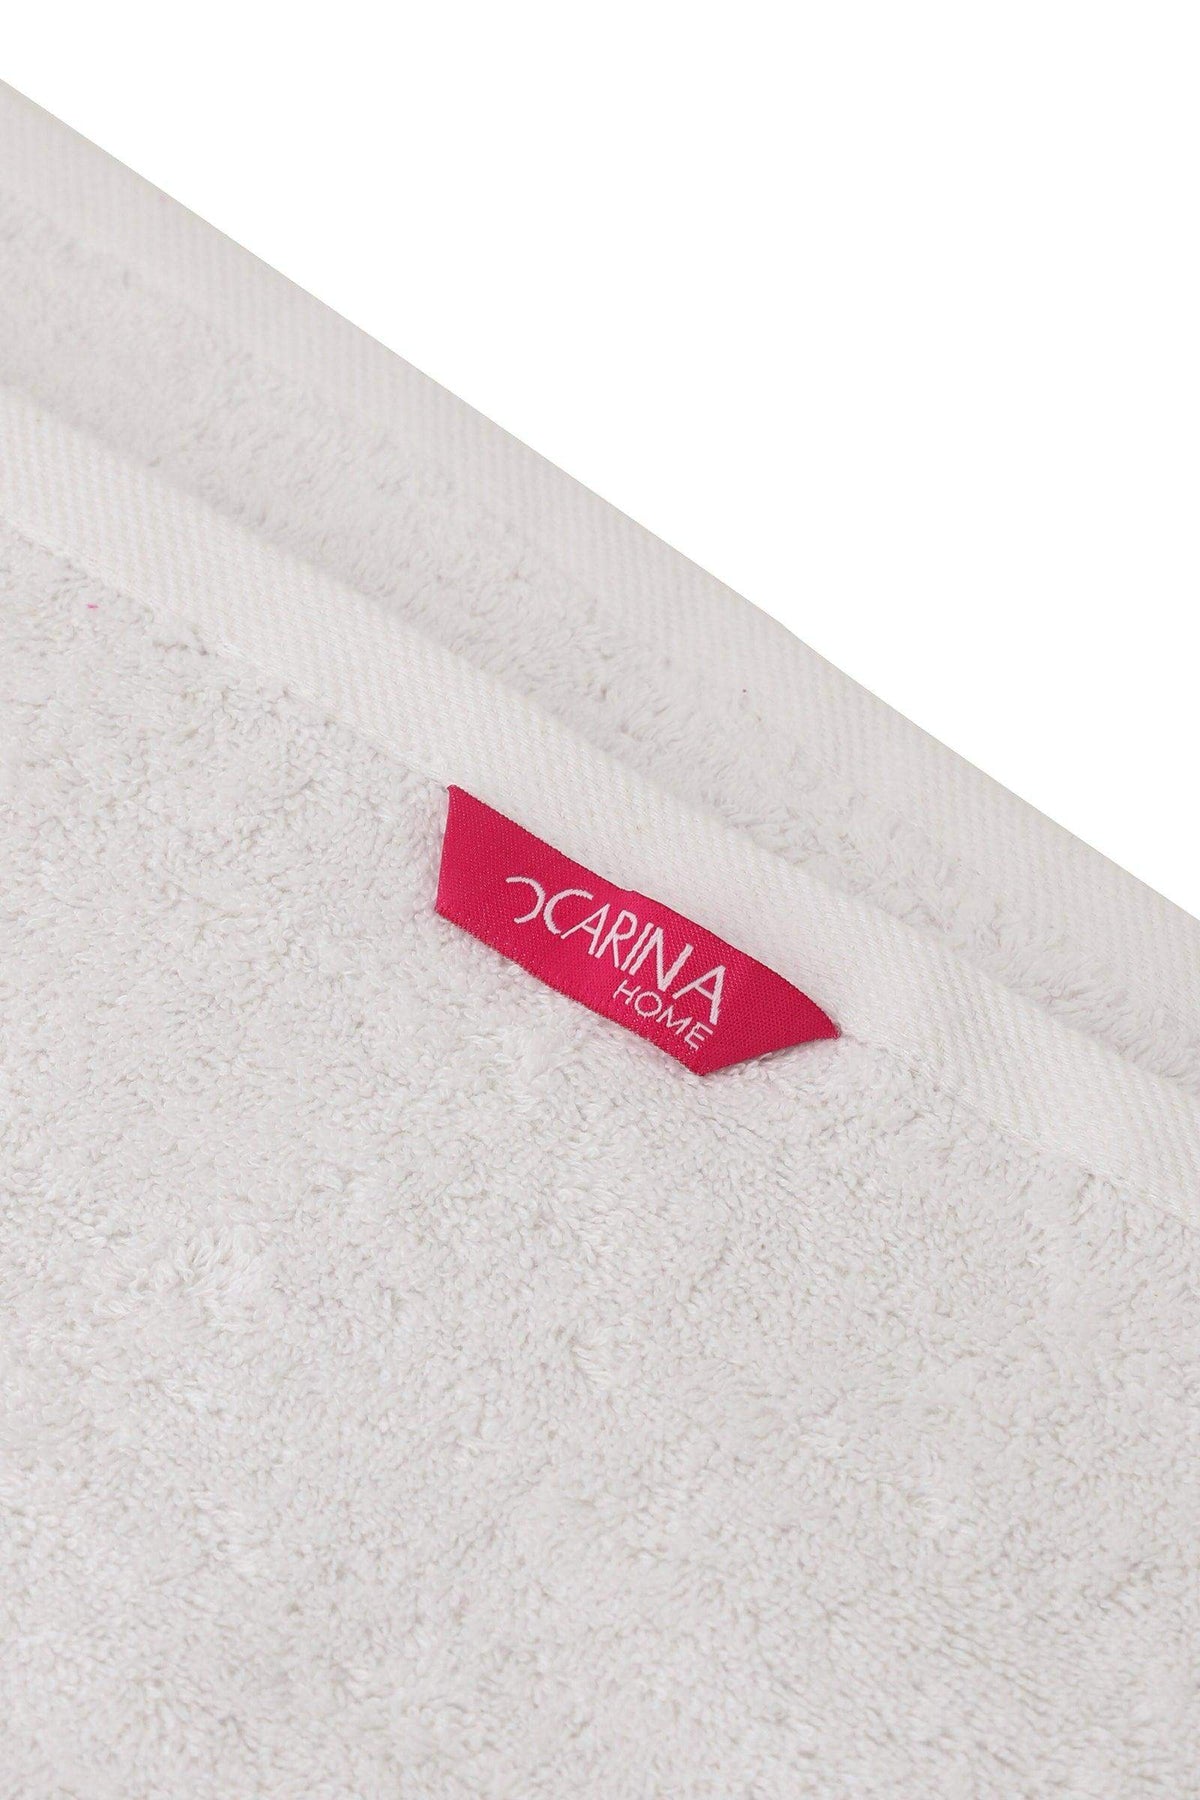 Face Towel - 100x50 cm - Carina - كارينا